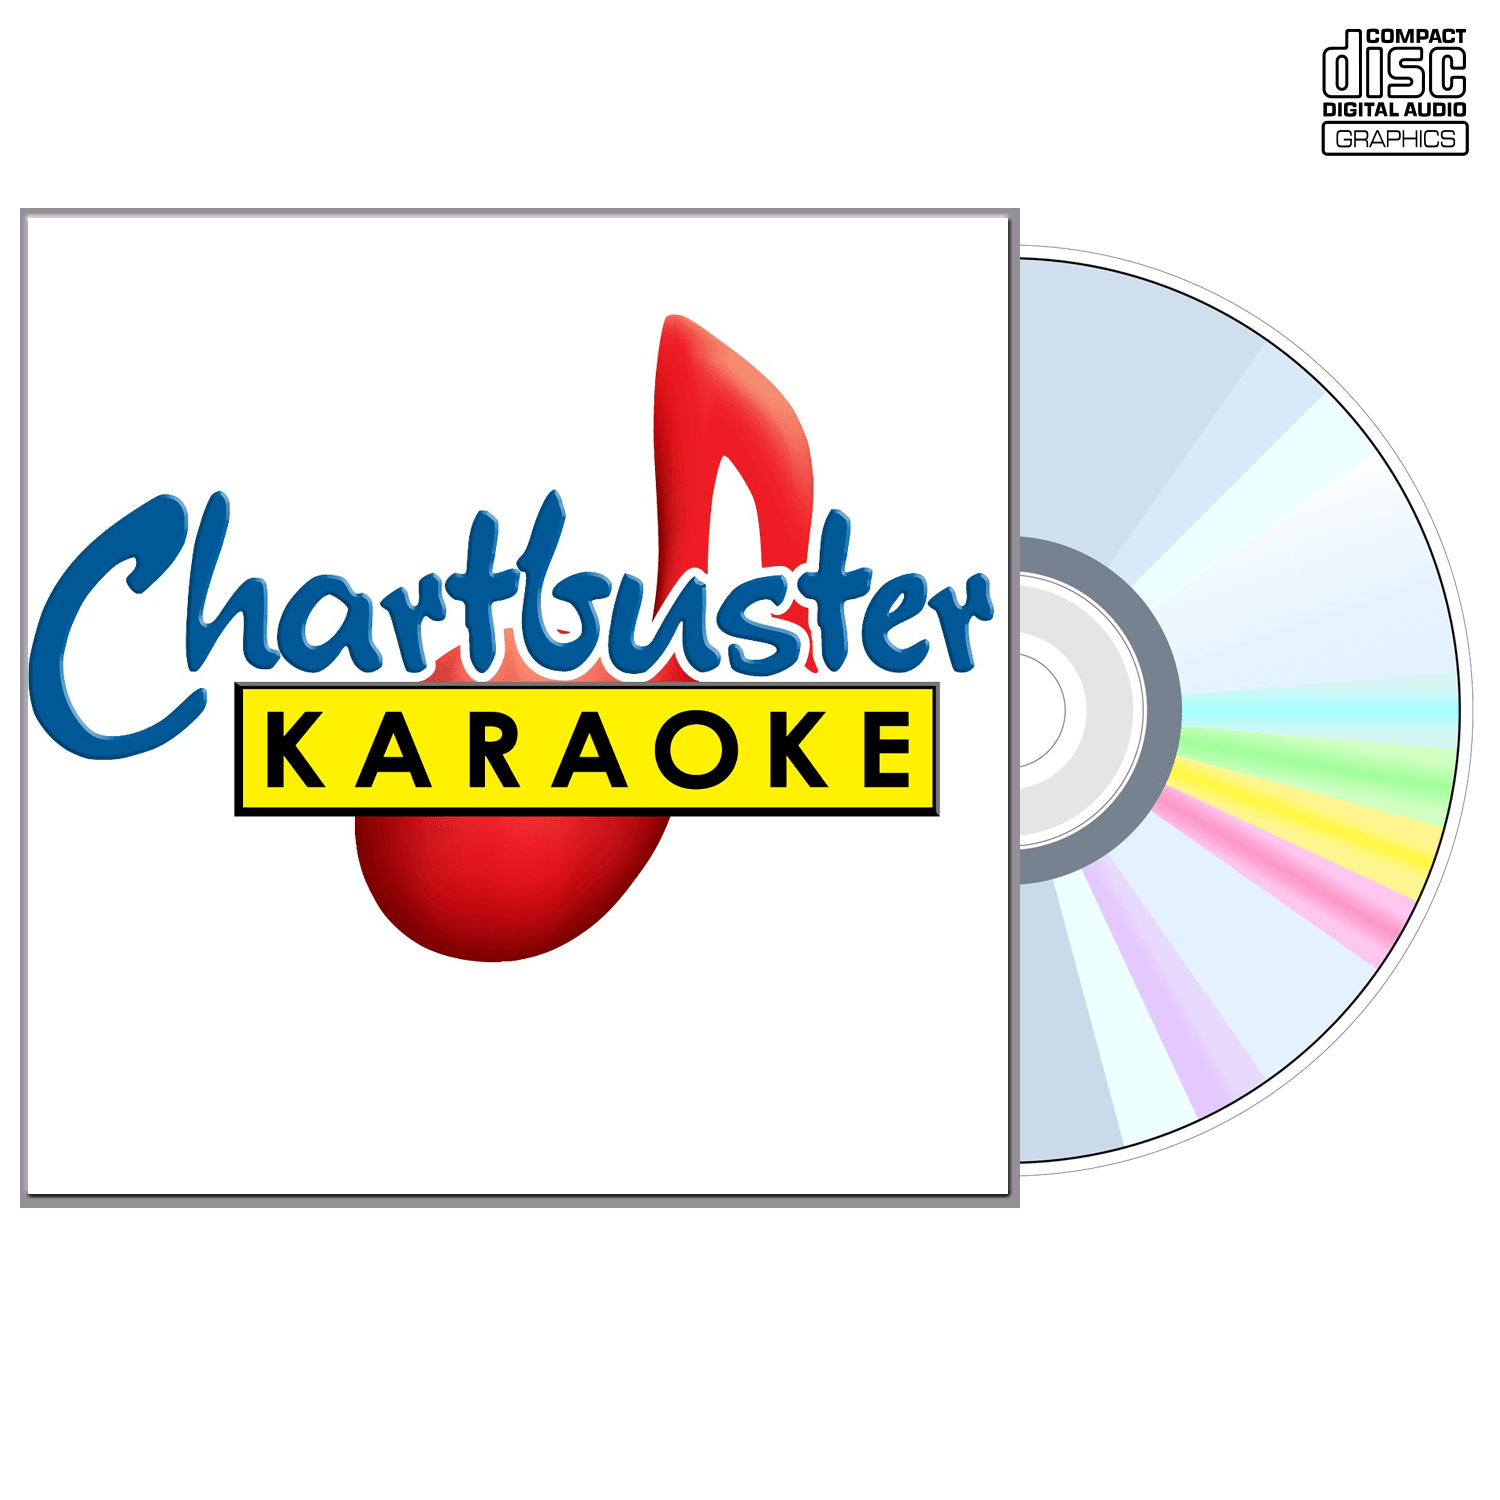 Exile - CD+G - Chartbuster Karaoke - Karaoke Home Entertainment